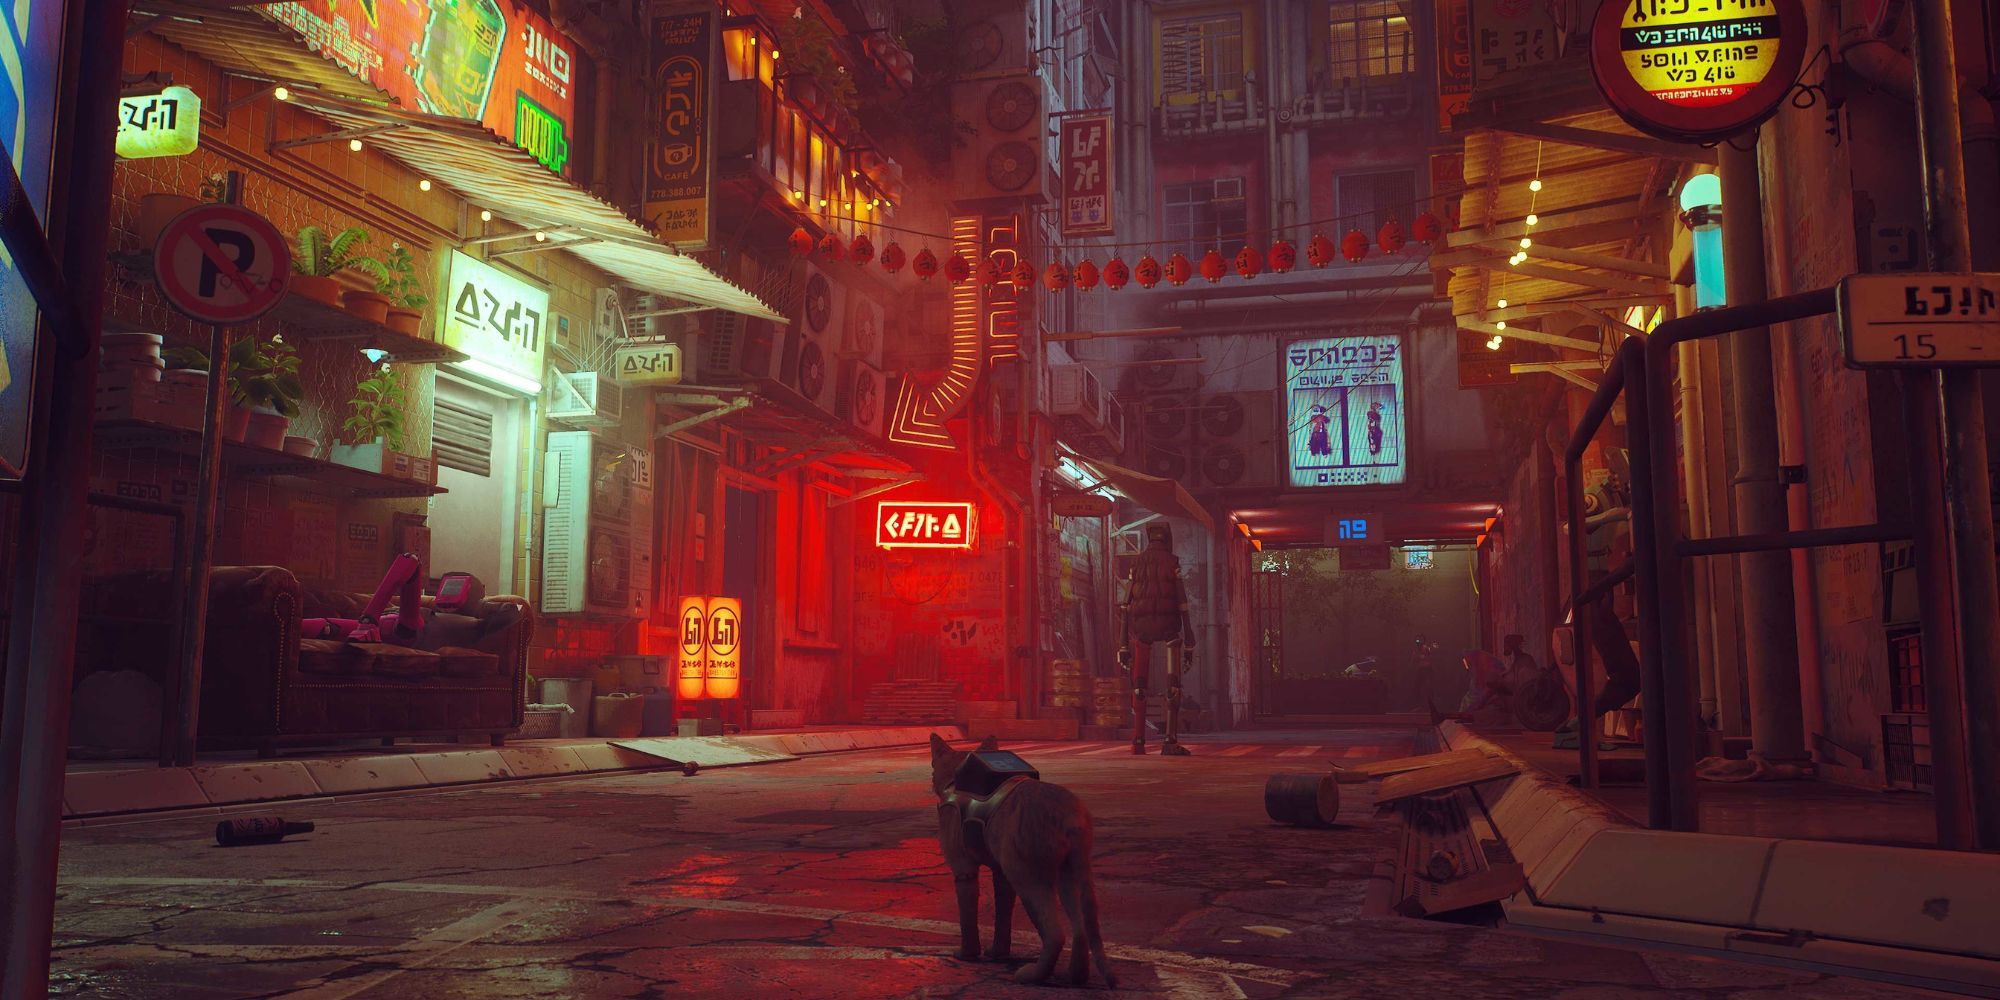 A cat strolls through a neon-lit city 